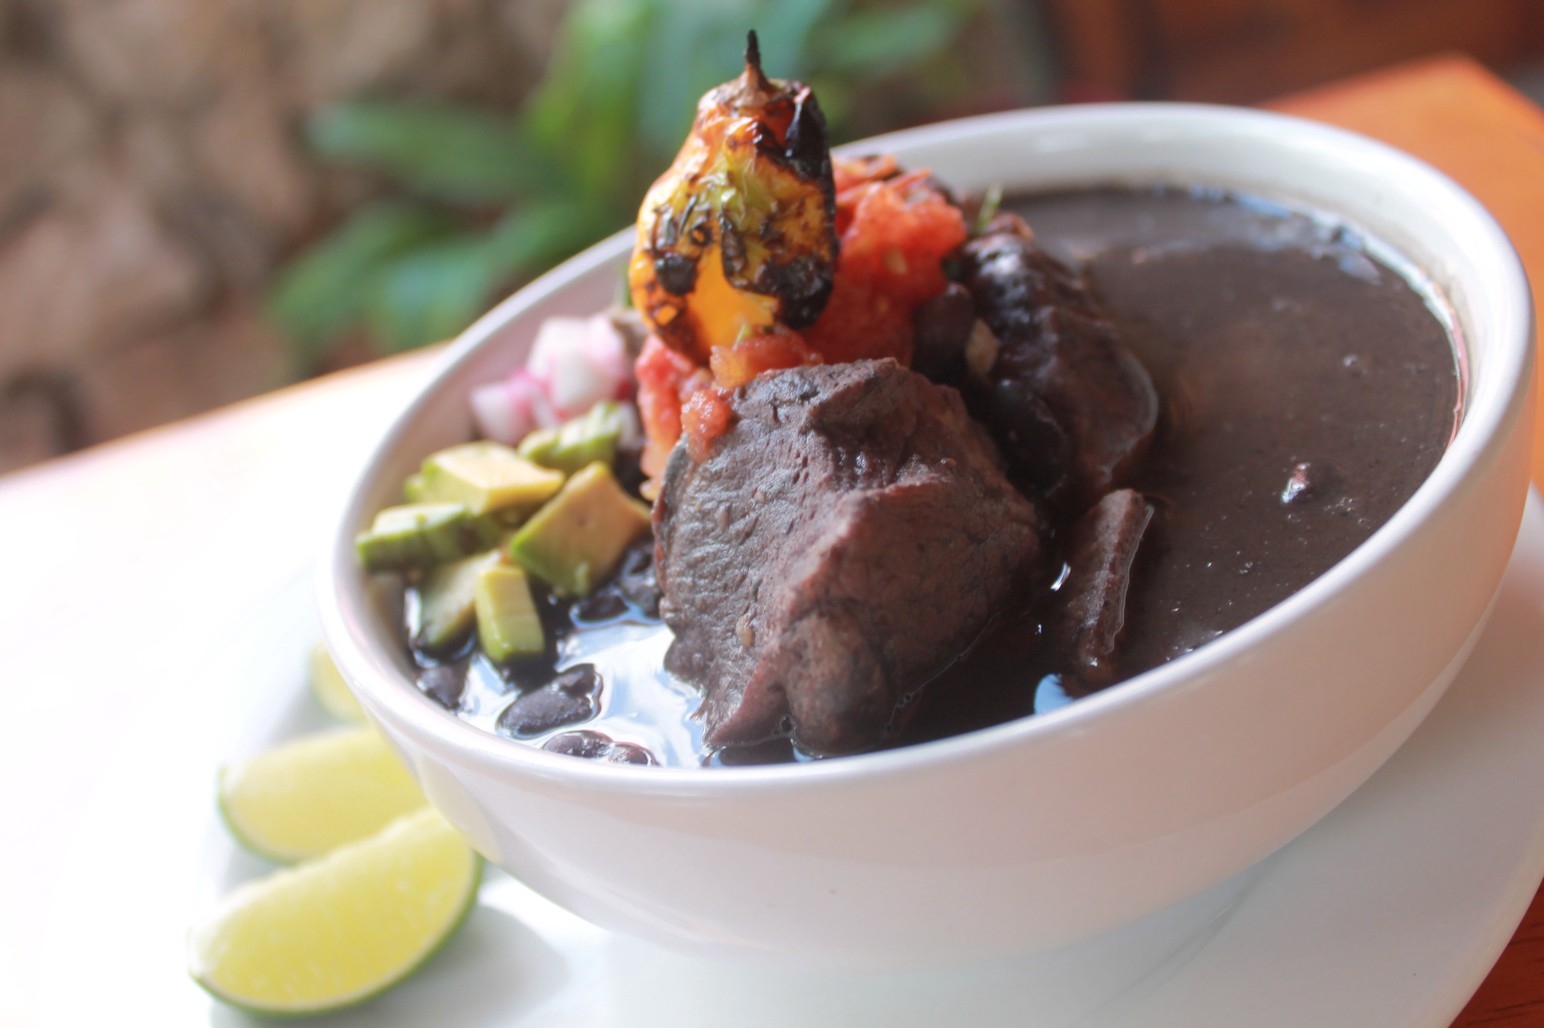 Comer Frijol con Puerco: La tradición yucateca de todos los lunes